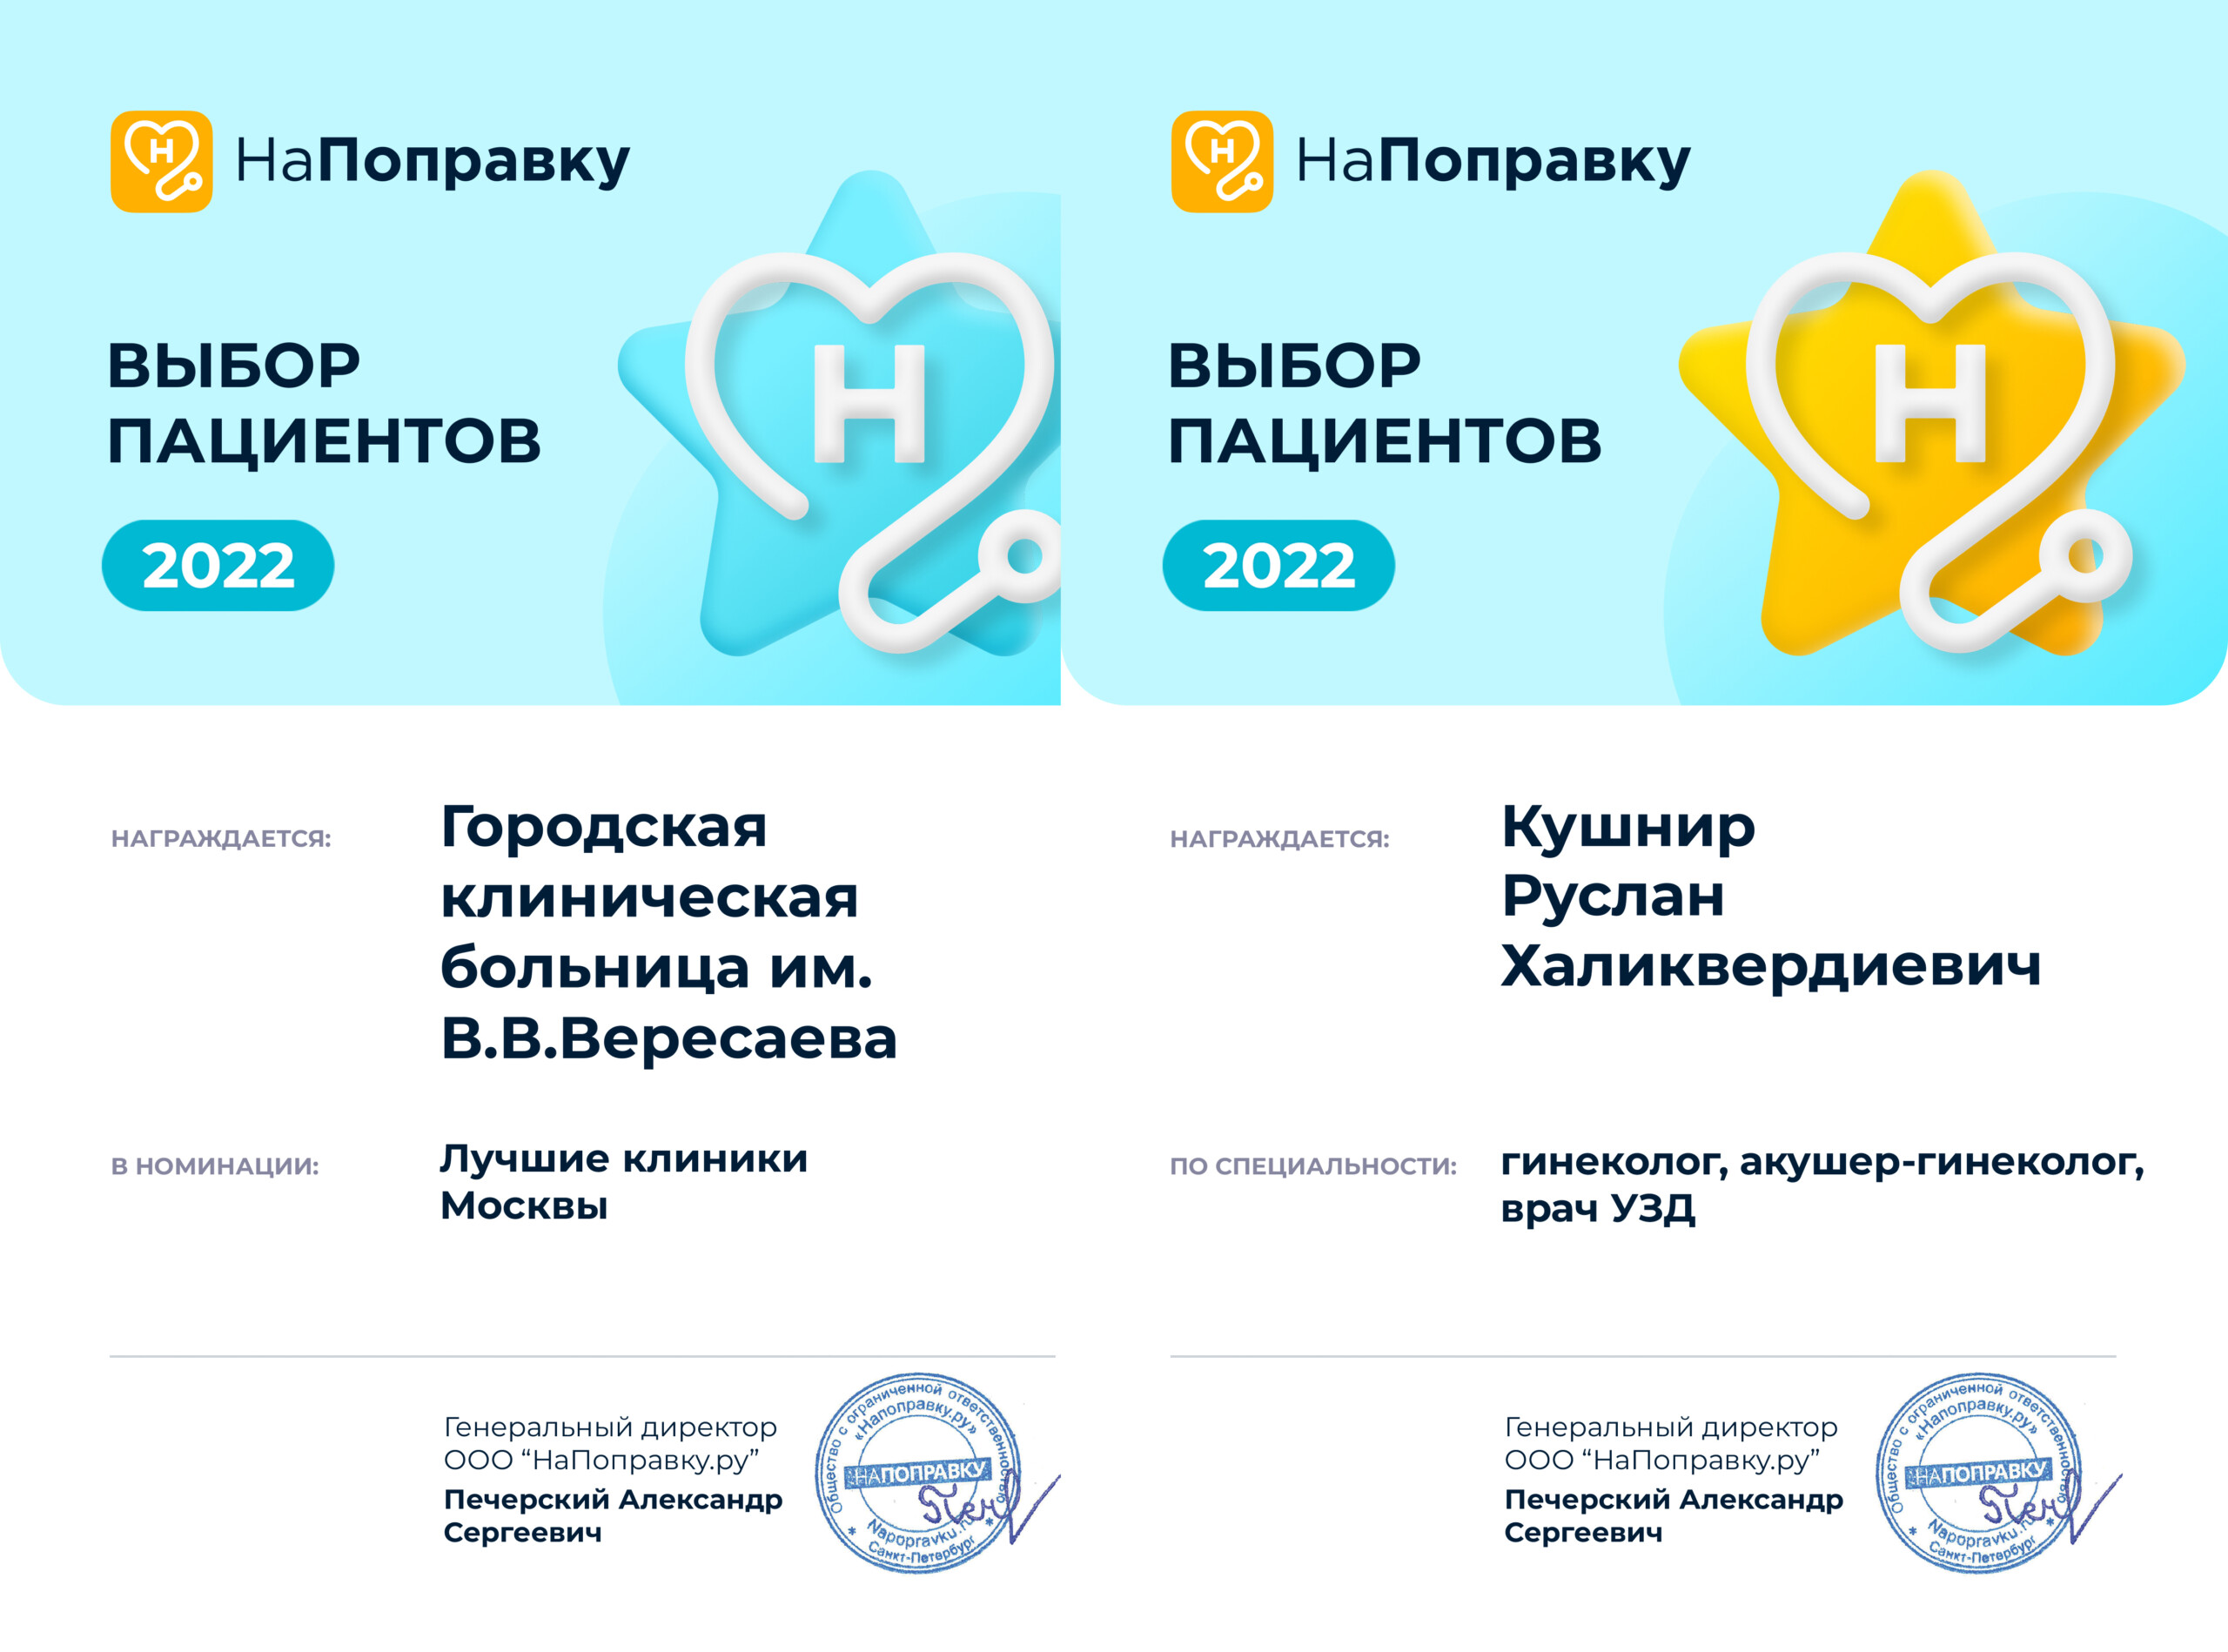 Больница Вересаева получила премию «Выбор пациентов НаПоправку – 2022»